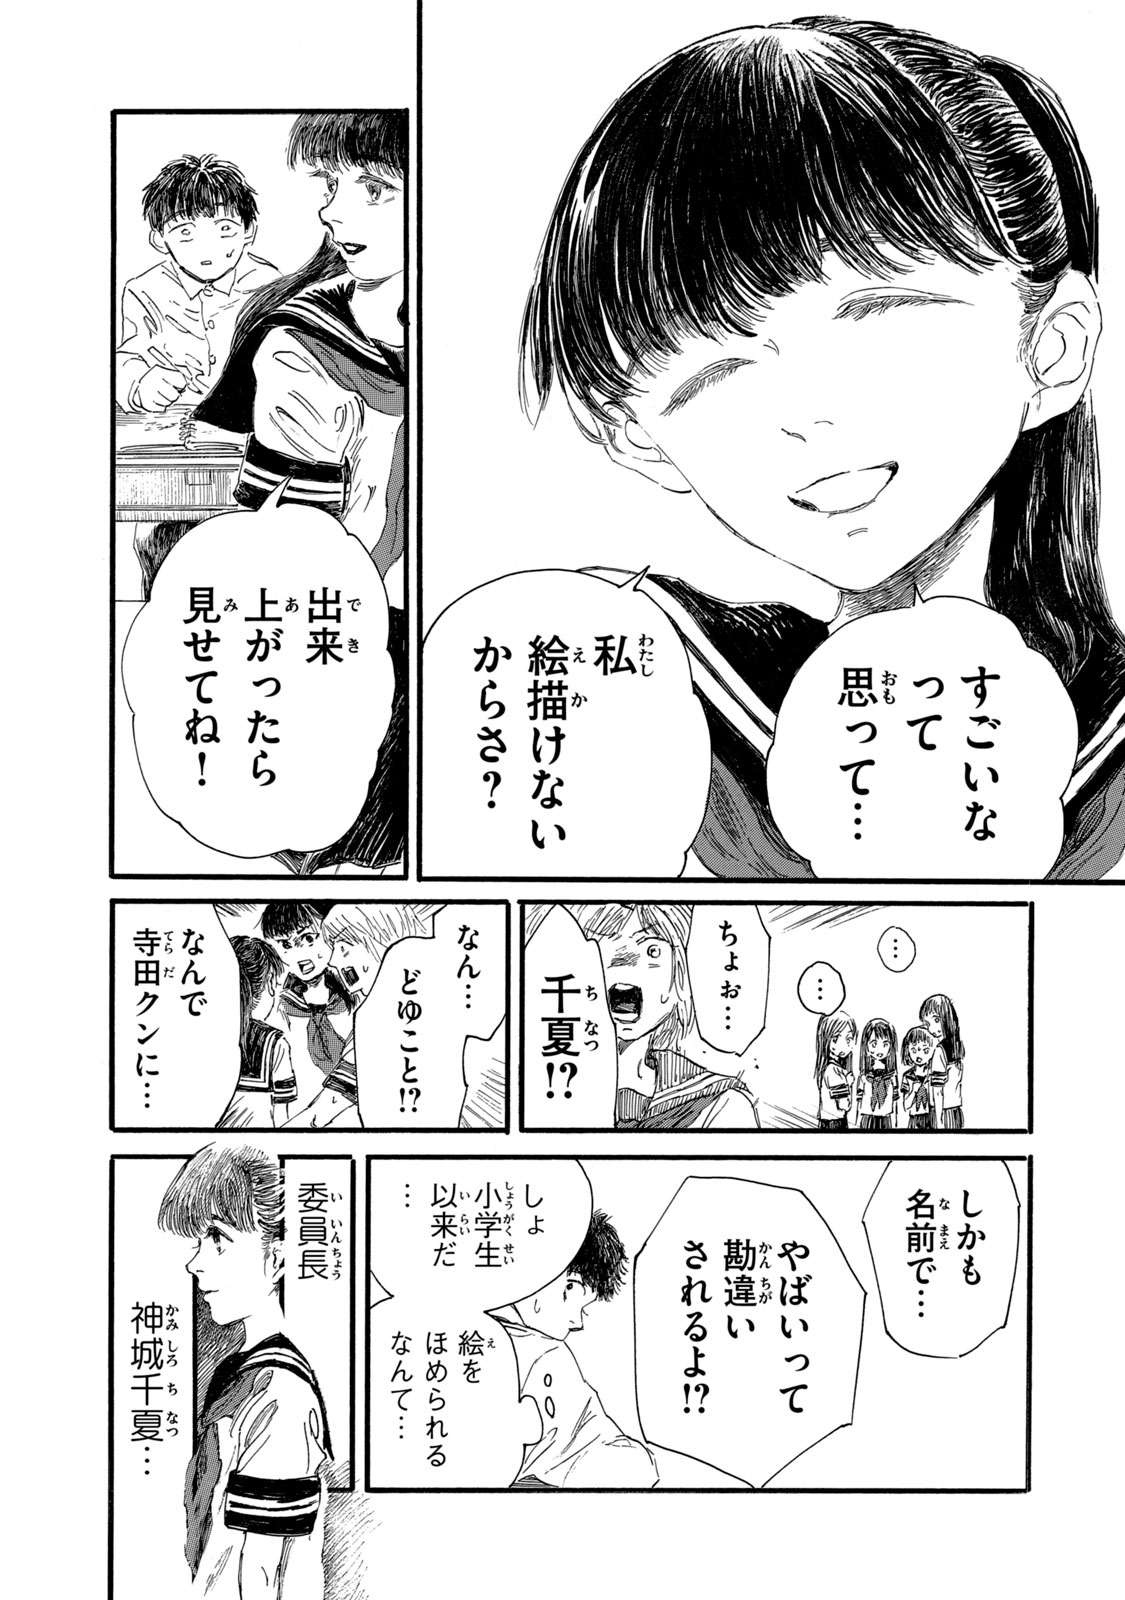 Watashi no Hara no Naka no Bakemono - Chapter 6 - Page 17